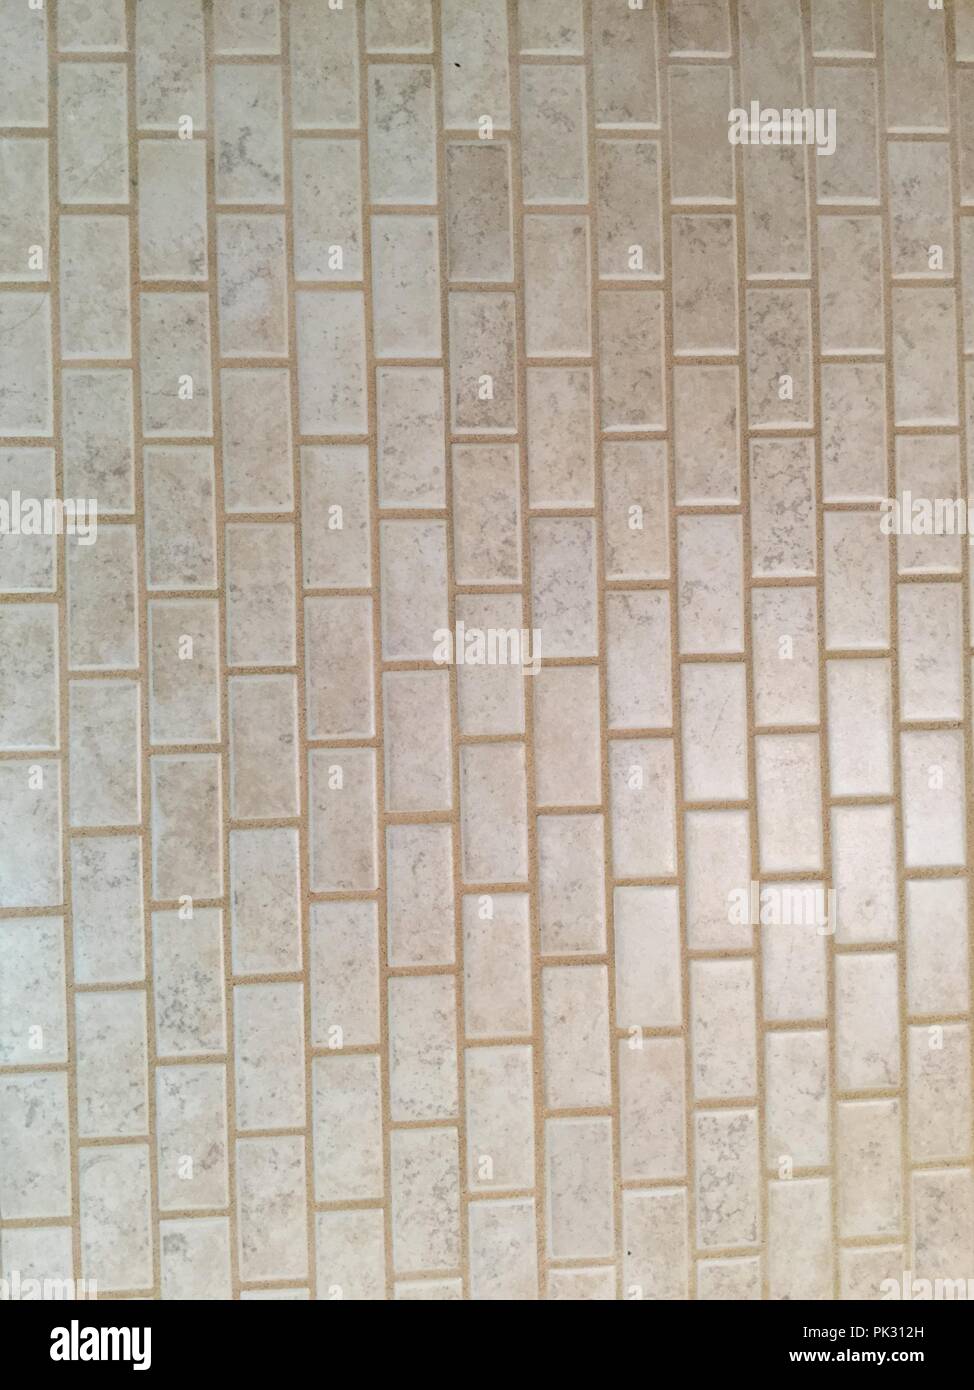 Rectangular shaped tile background. Stock Photo